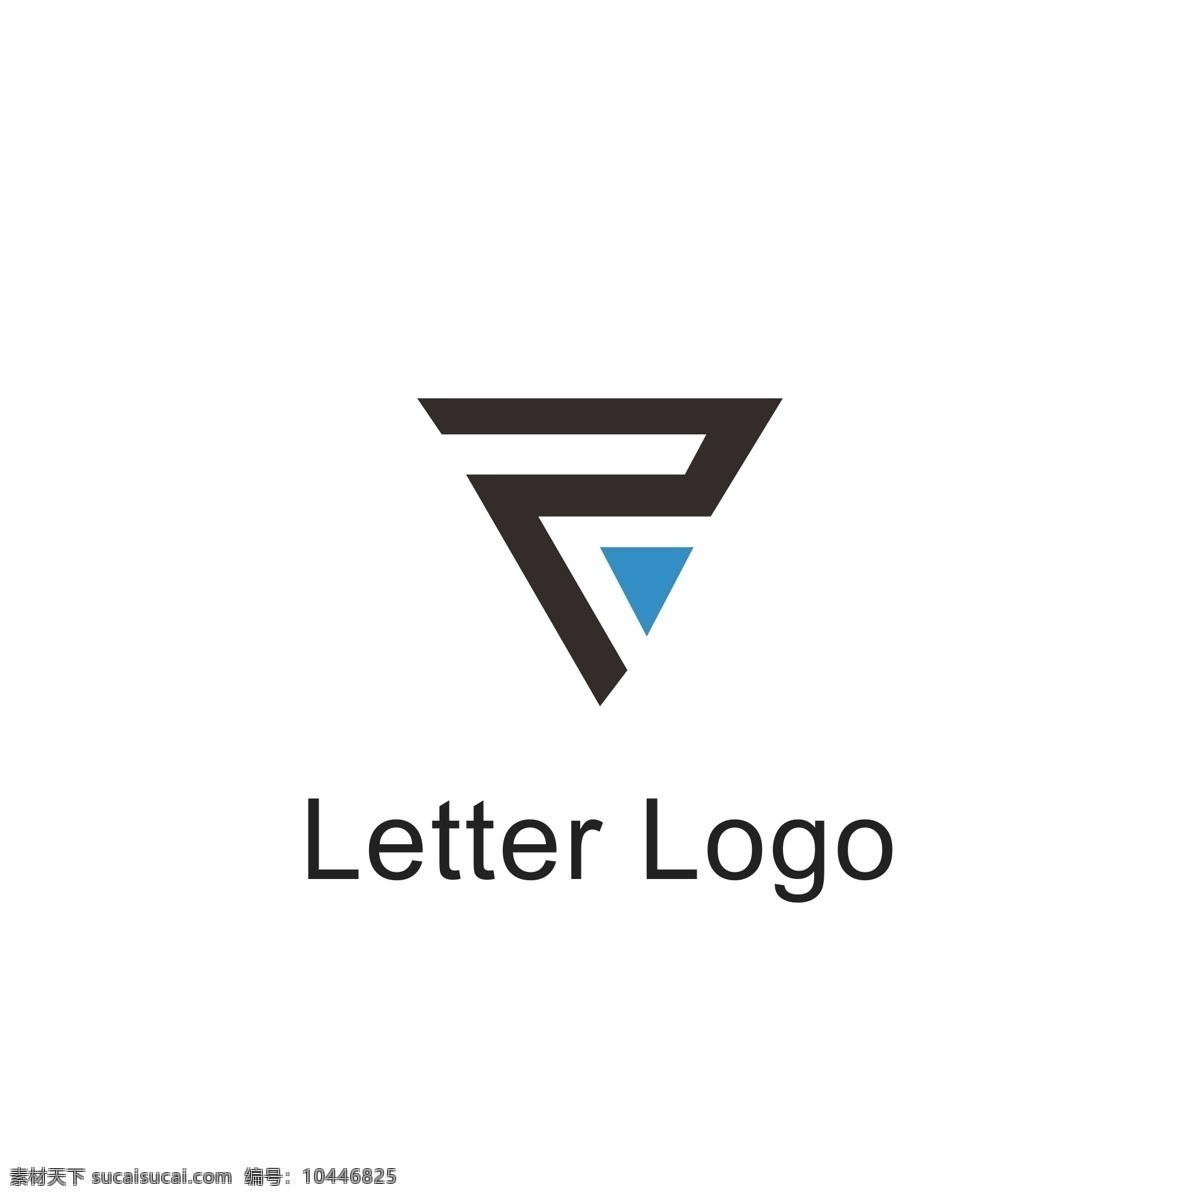 字母 变形 logo 字母logo 字母z 字母变形 简约时尚 通用logo 几何logo logo设计 标识设计 标志设计 ai矢量